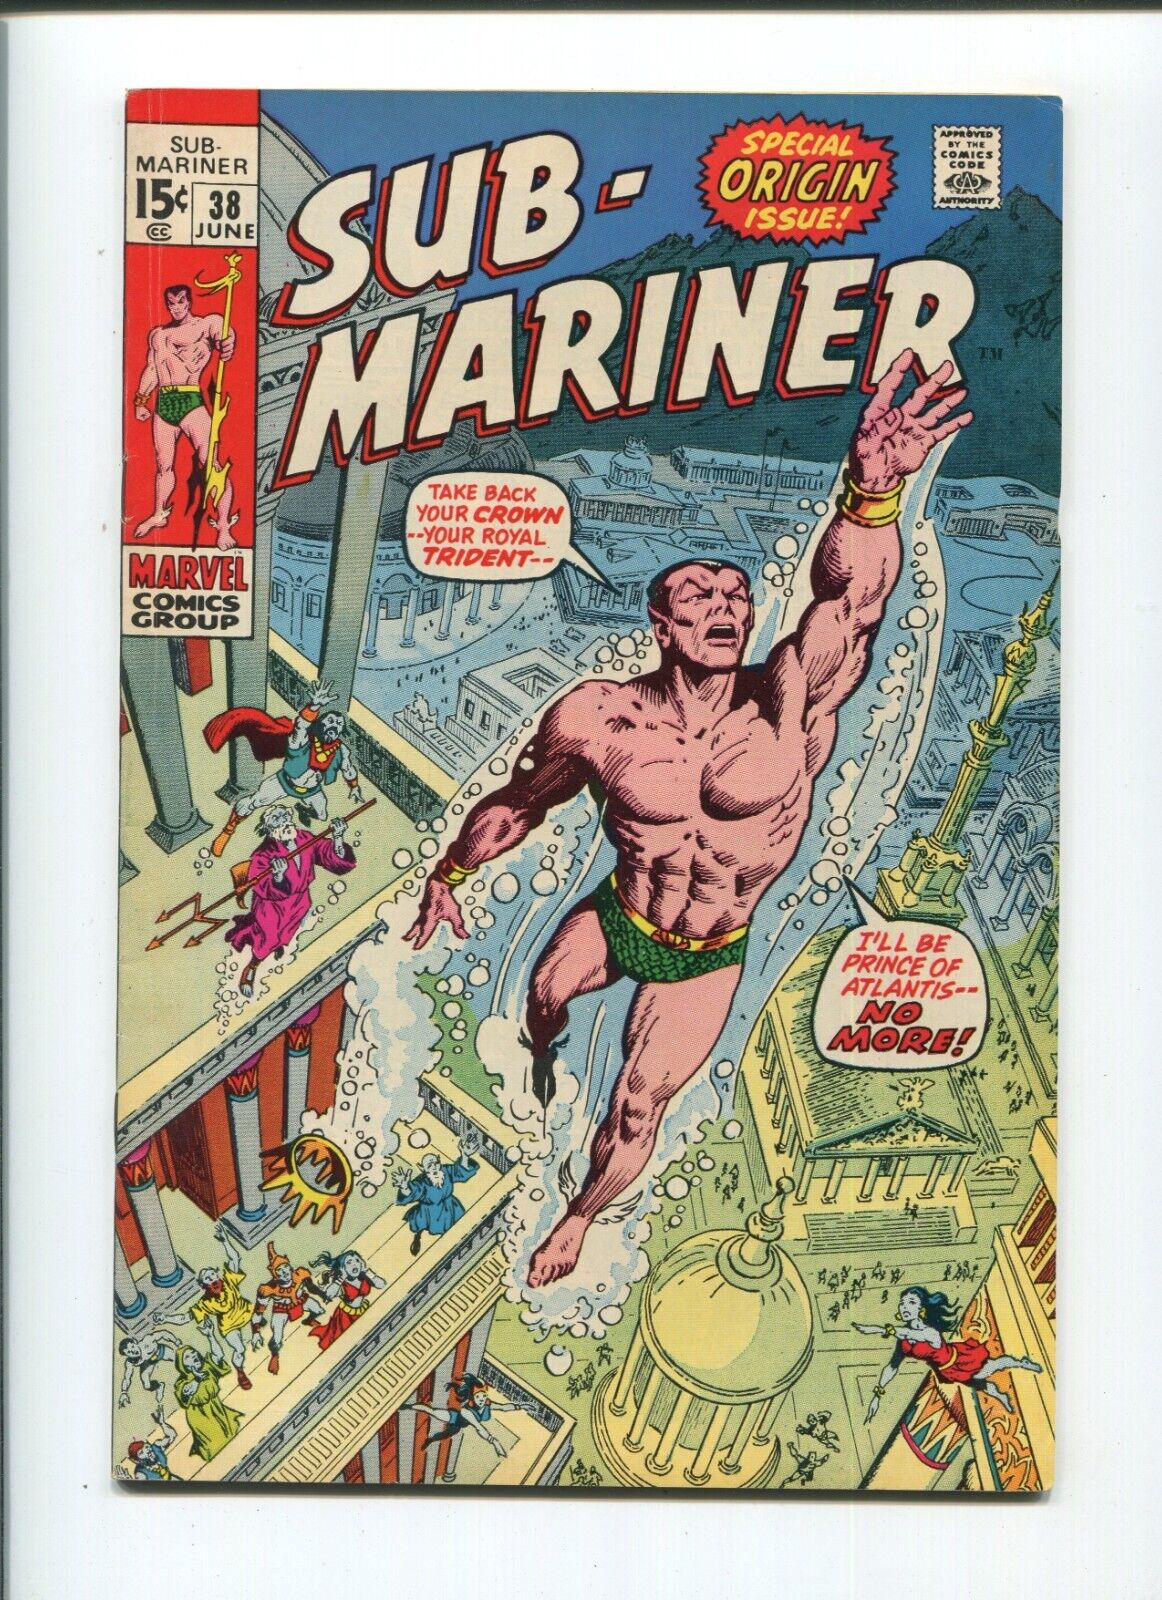 Marvel - Sub-Mariner #38 - June 1971 - Prince Namor/Special Origin Issue - VF-